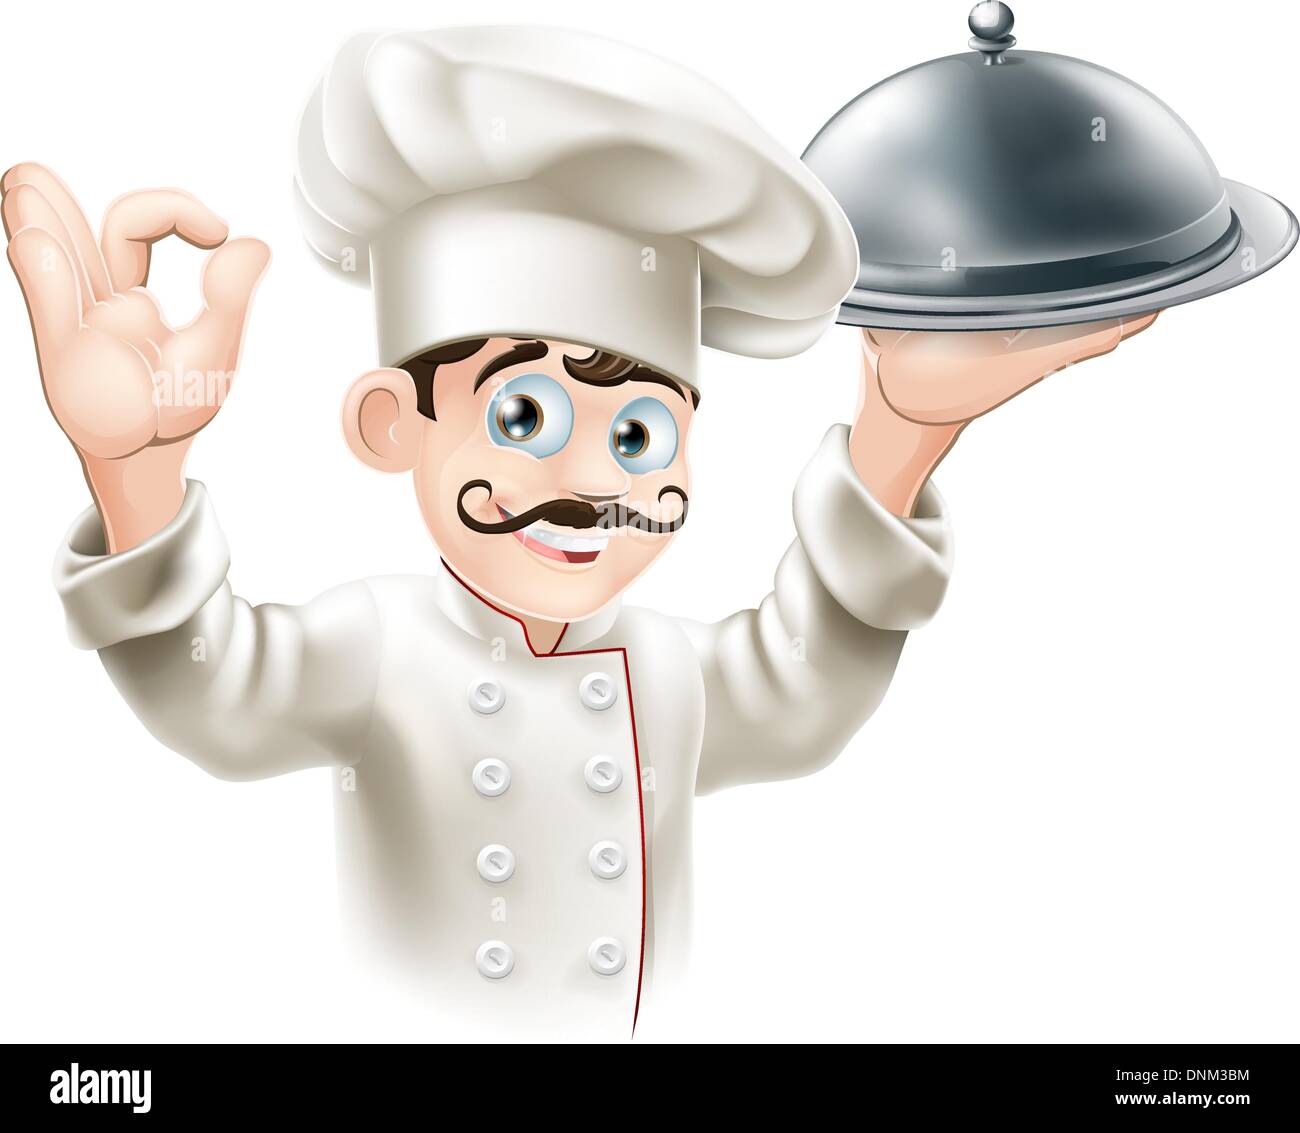 Abbildung von einem Gourmet-Koch holding Silbertablett und eine Ordnung Zeichen Stock Vektor